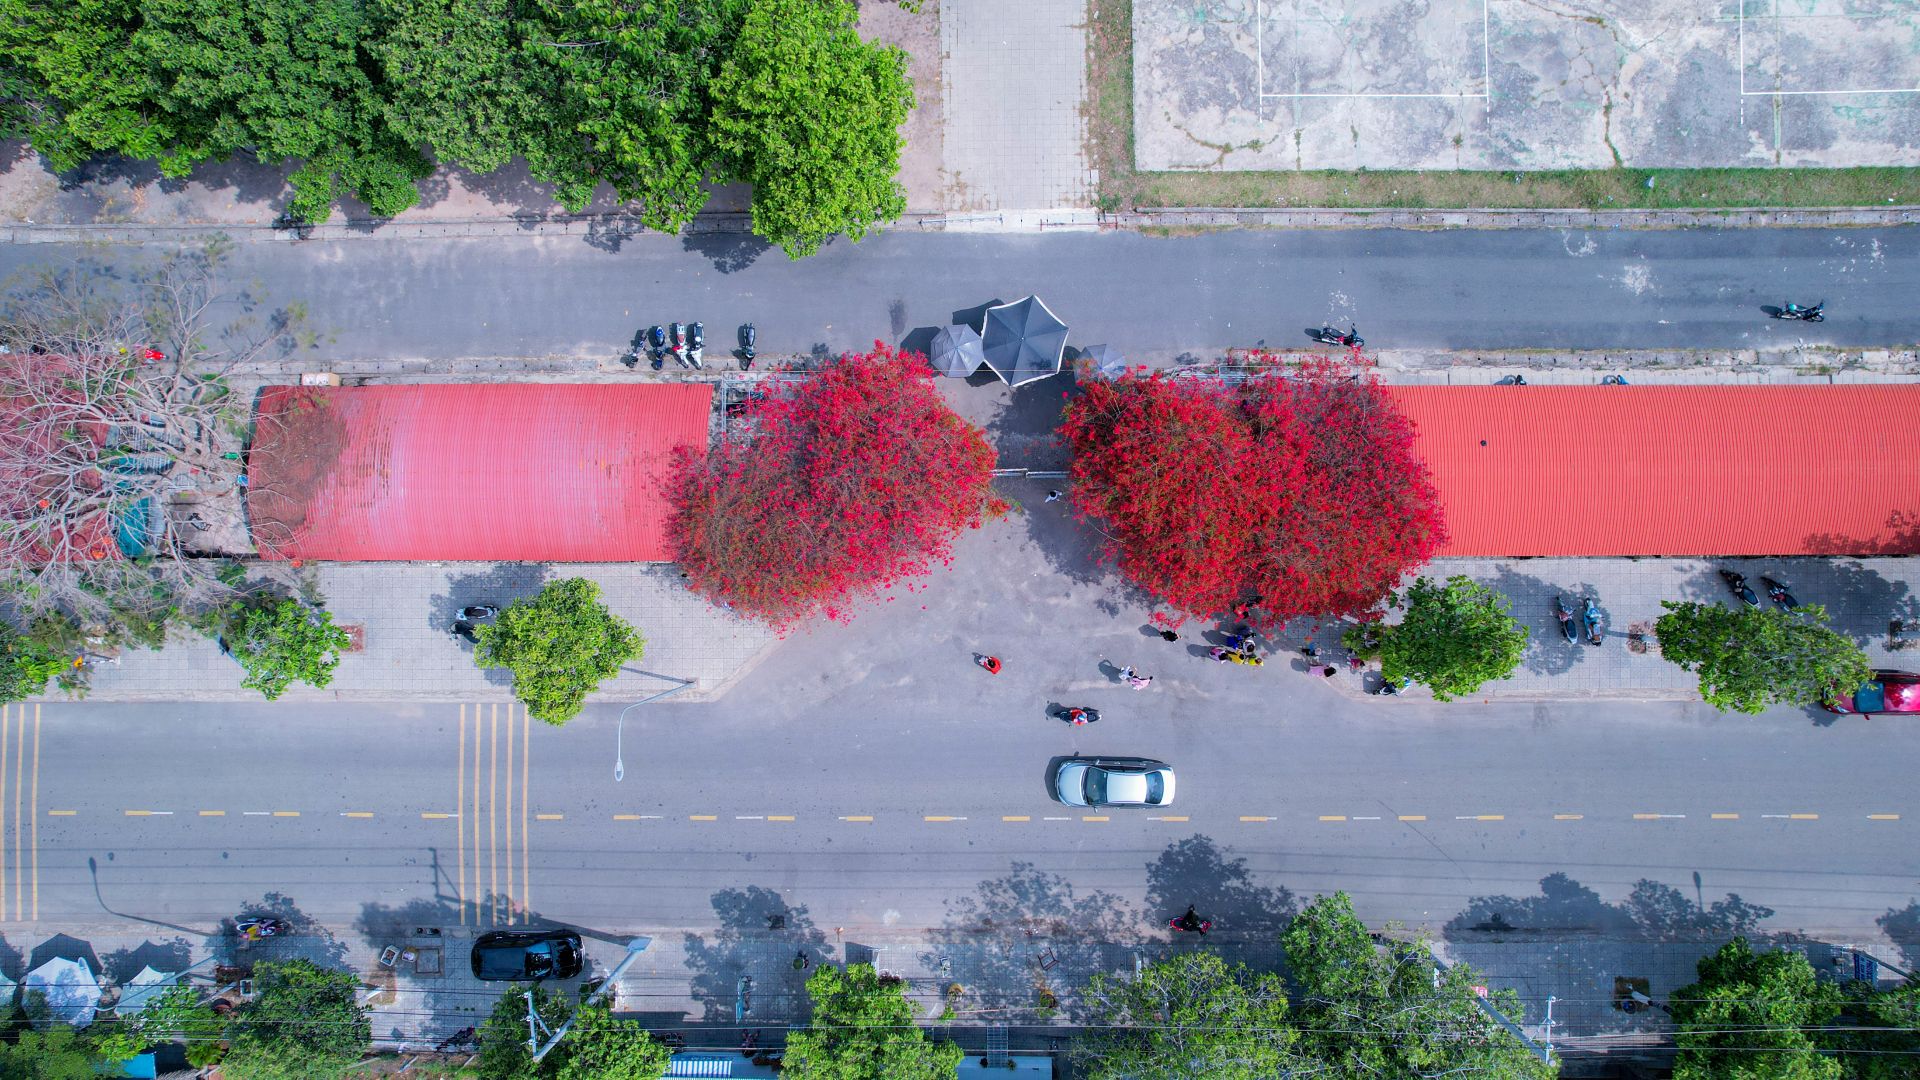 Một giàn hoa giấy tuôn bông đỏ không kịp cản đang xôn xao ở Tây Ninh, nhiều người đến chụp ảnh, ngắm say mê - Ảnh 2.